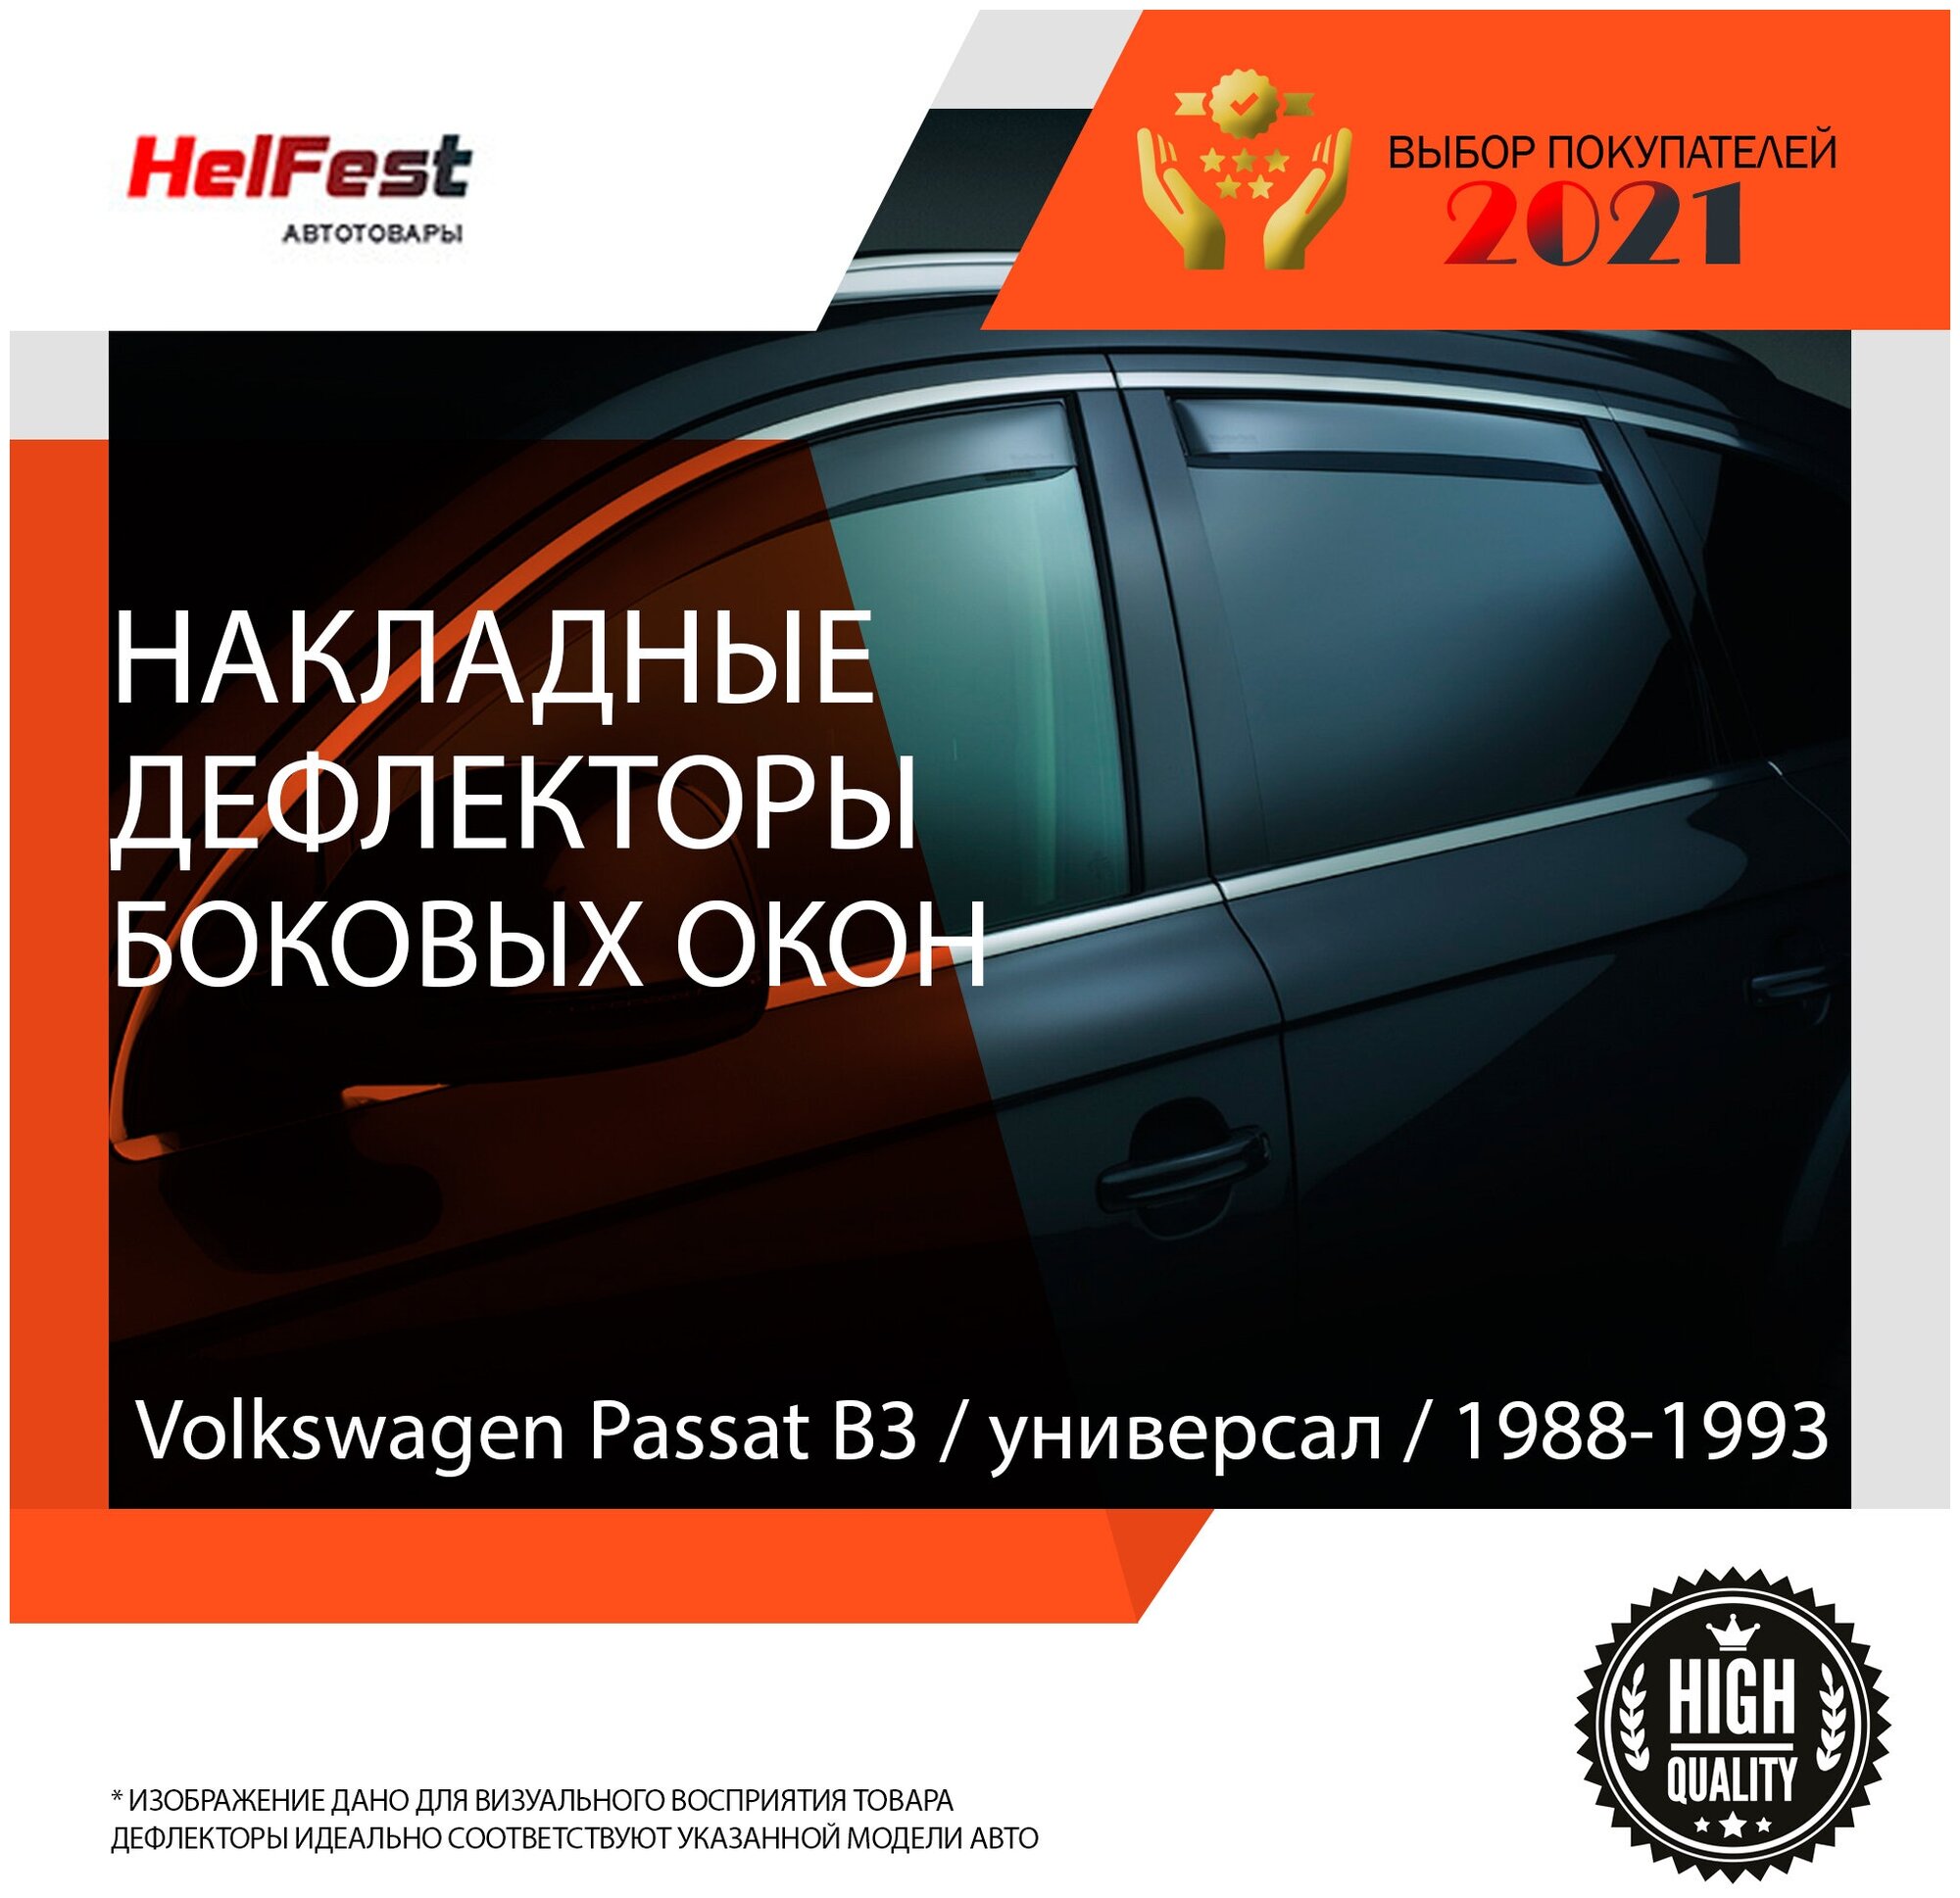 Дефлекторы боковых окон Volkswagen Passat / B3 / 1988-1993 / универсал